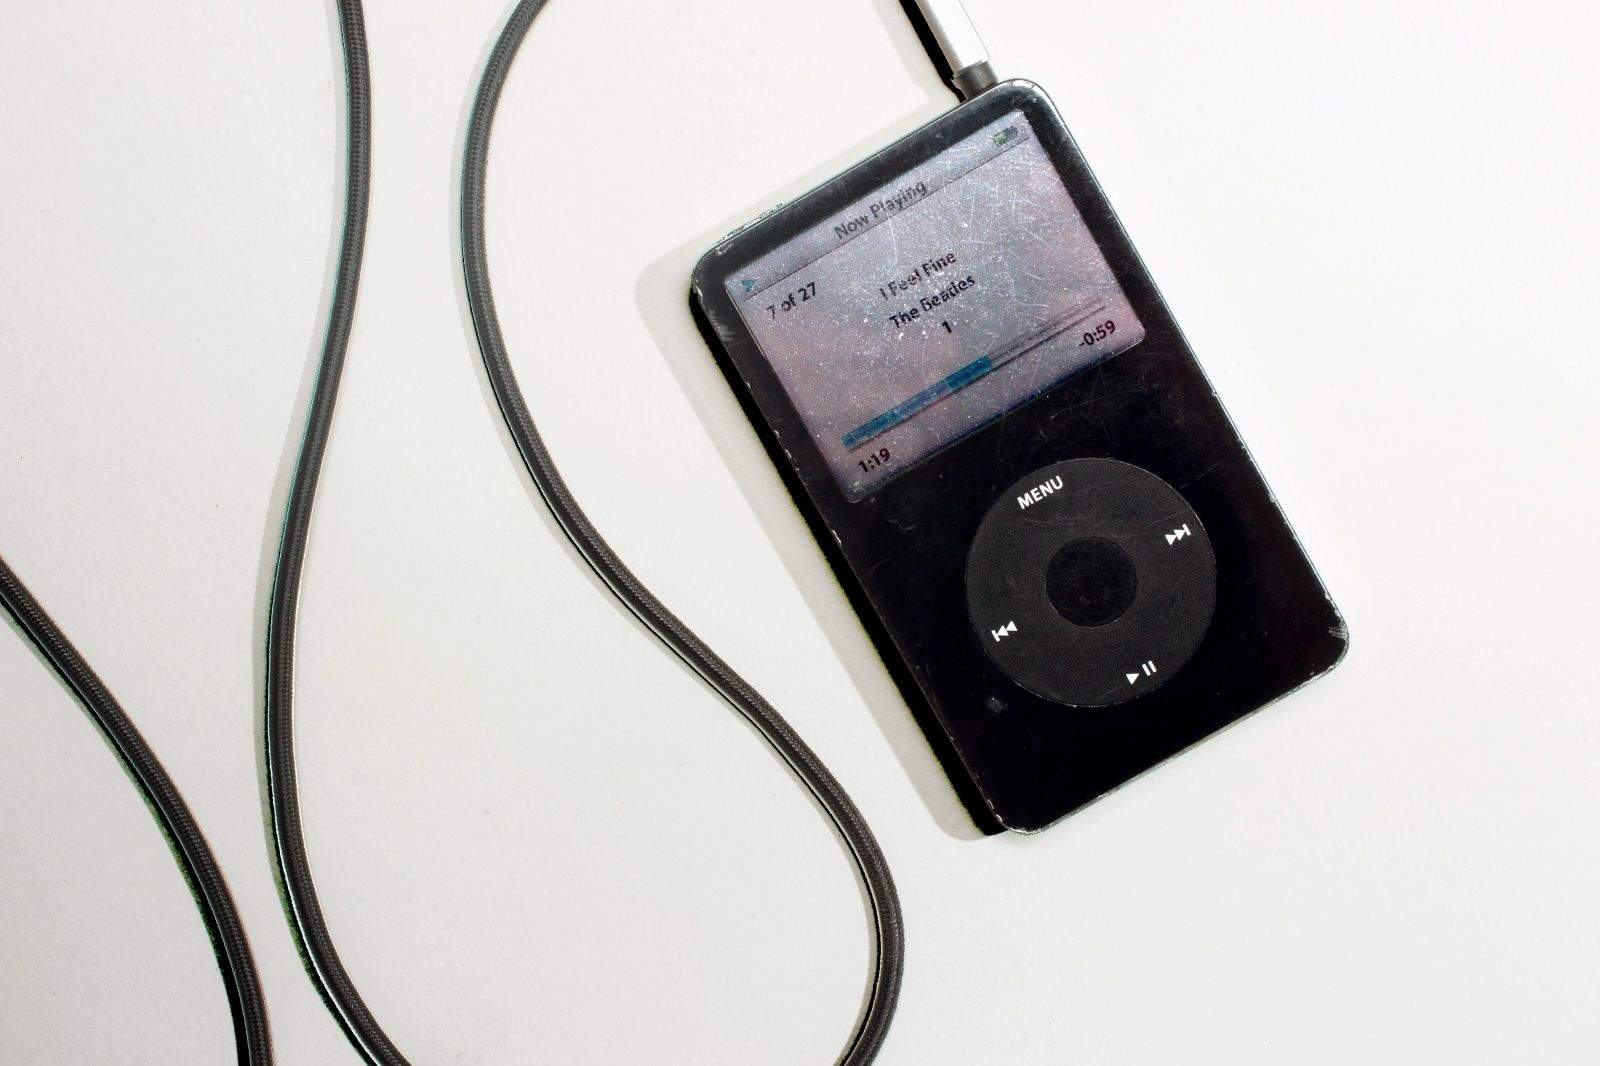 Этот день в истории Apple: формат MP3 производит революцию в мире музыкальной индустрии